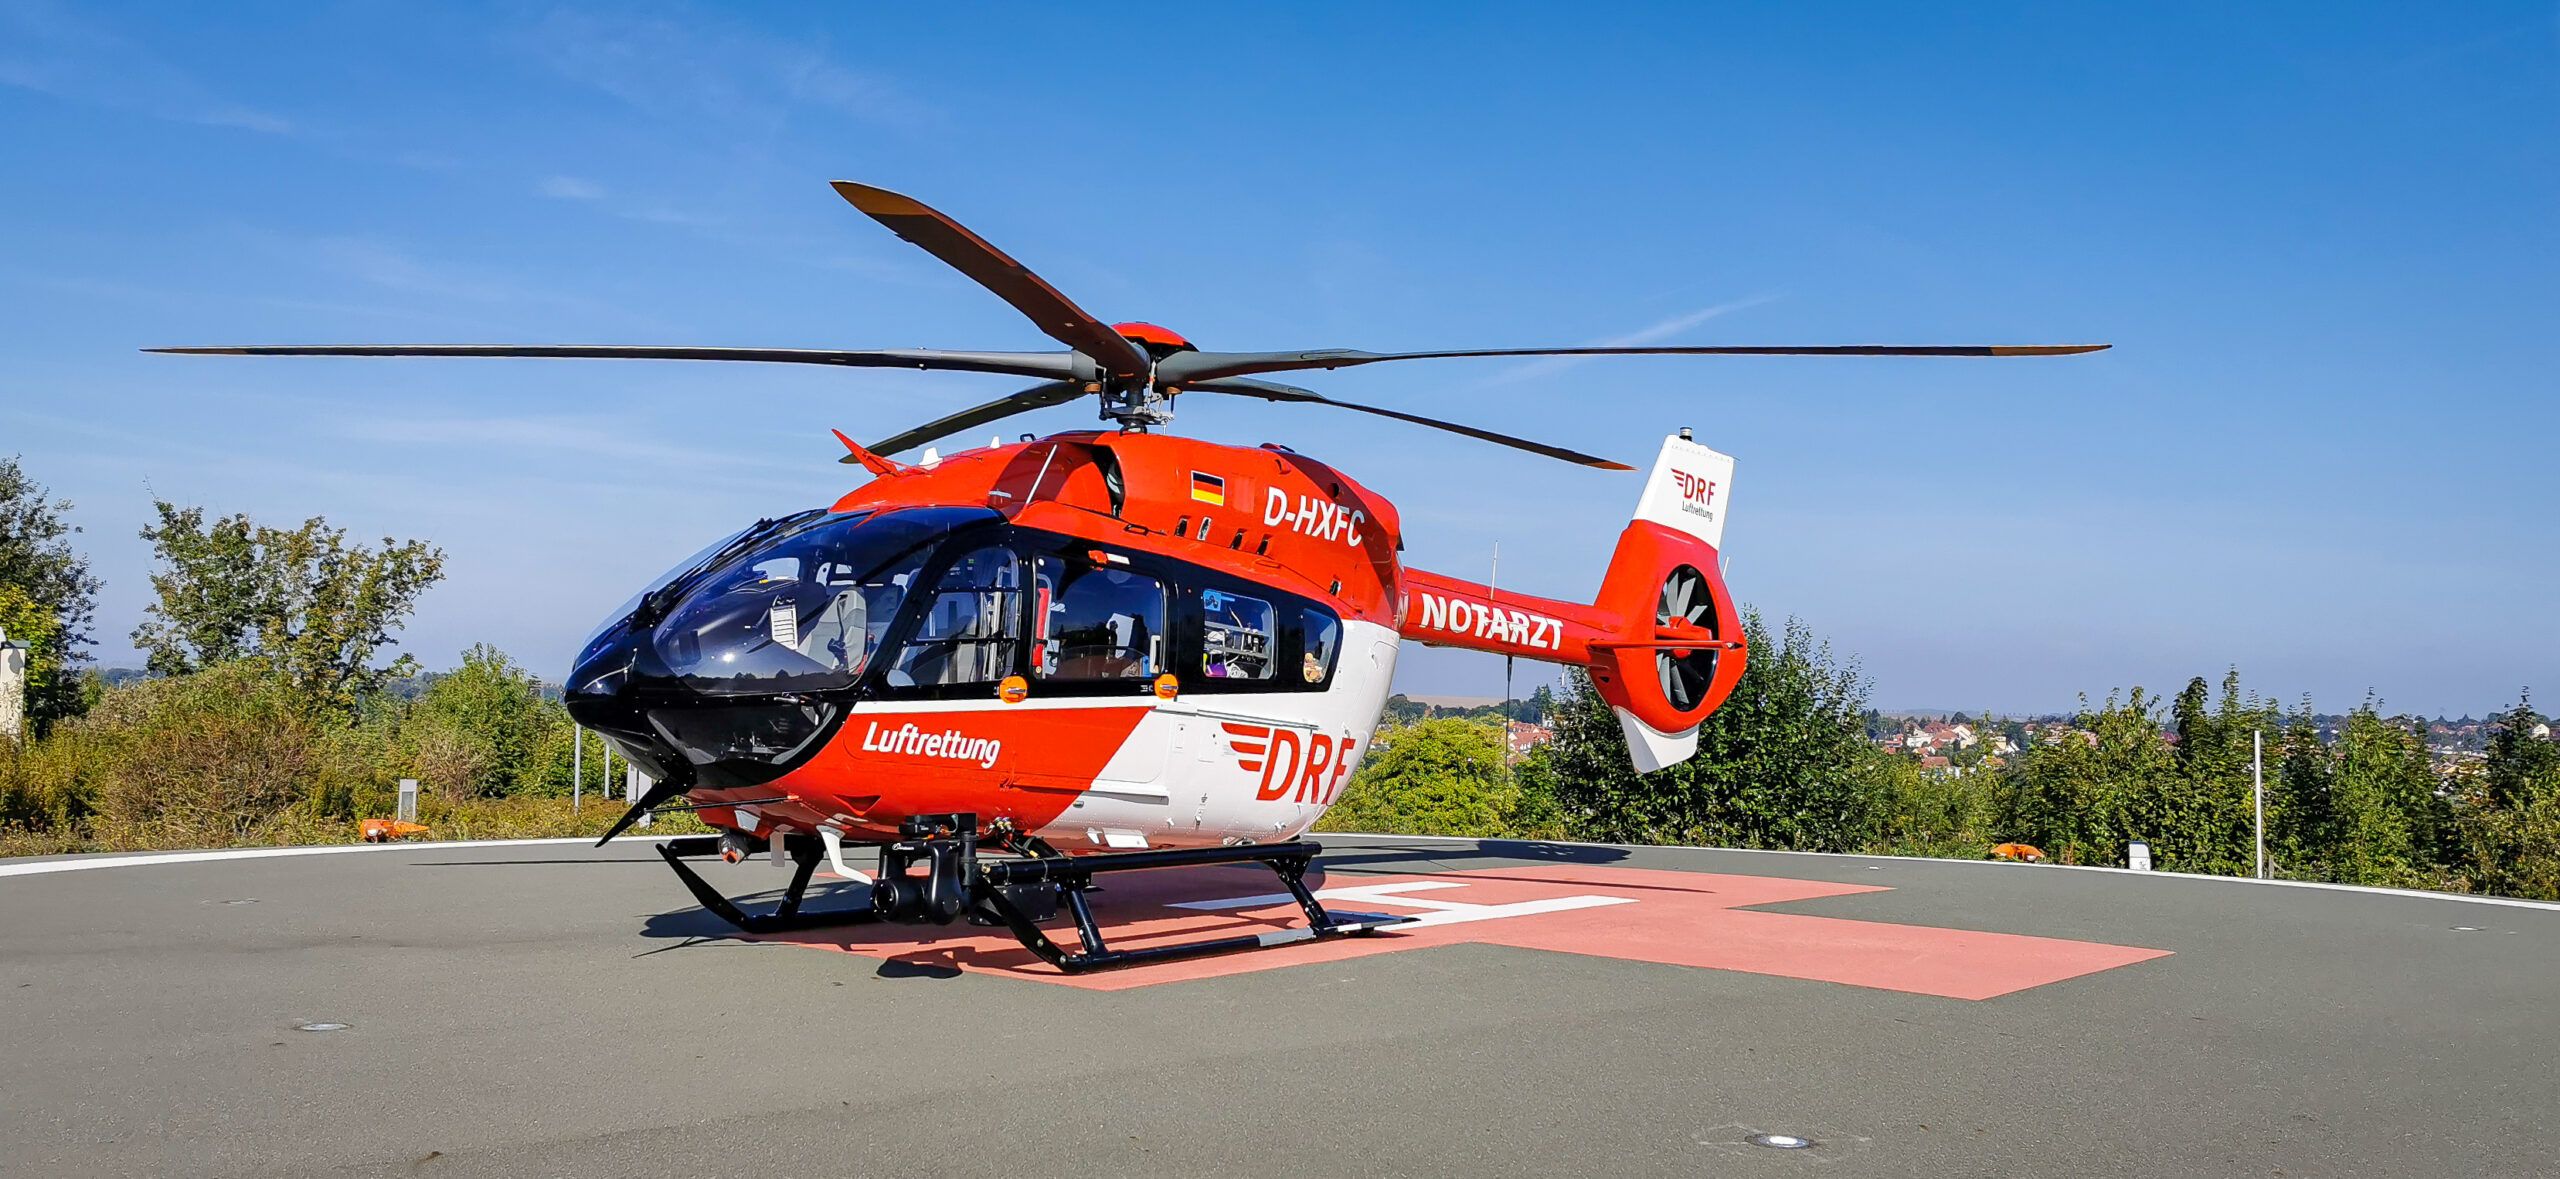 Seit dem 10. September sind die Luftretter in Bad Berka mit dem modernsten Hubschrauber, den es derzeit in der zivilen Luftrettung gibt, im Einsatz.